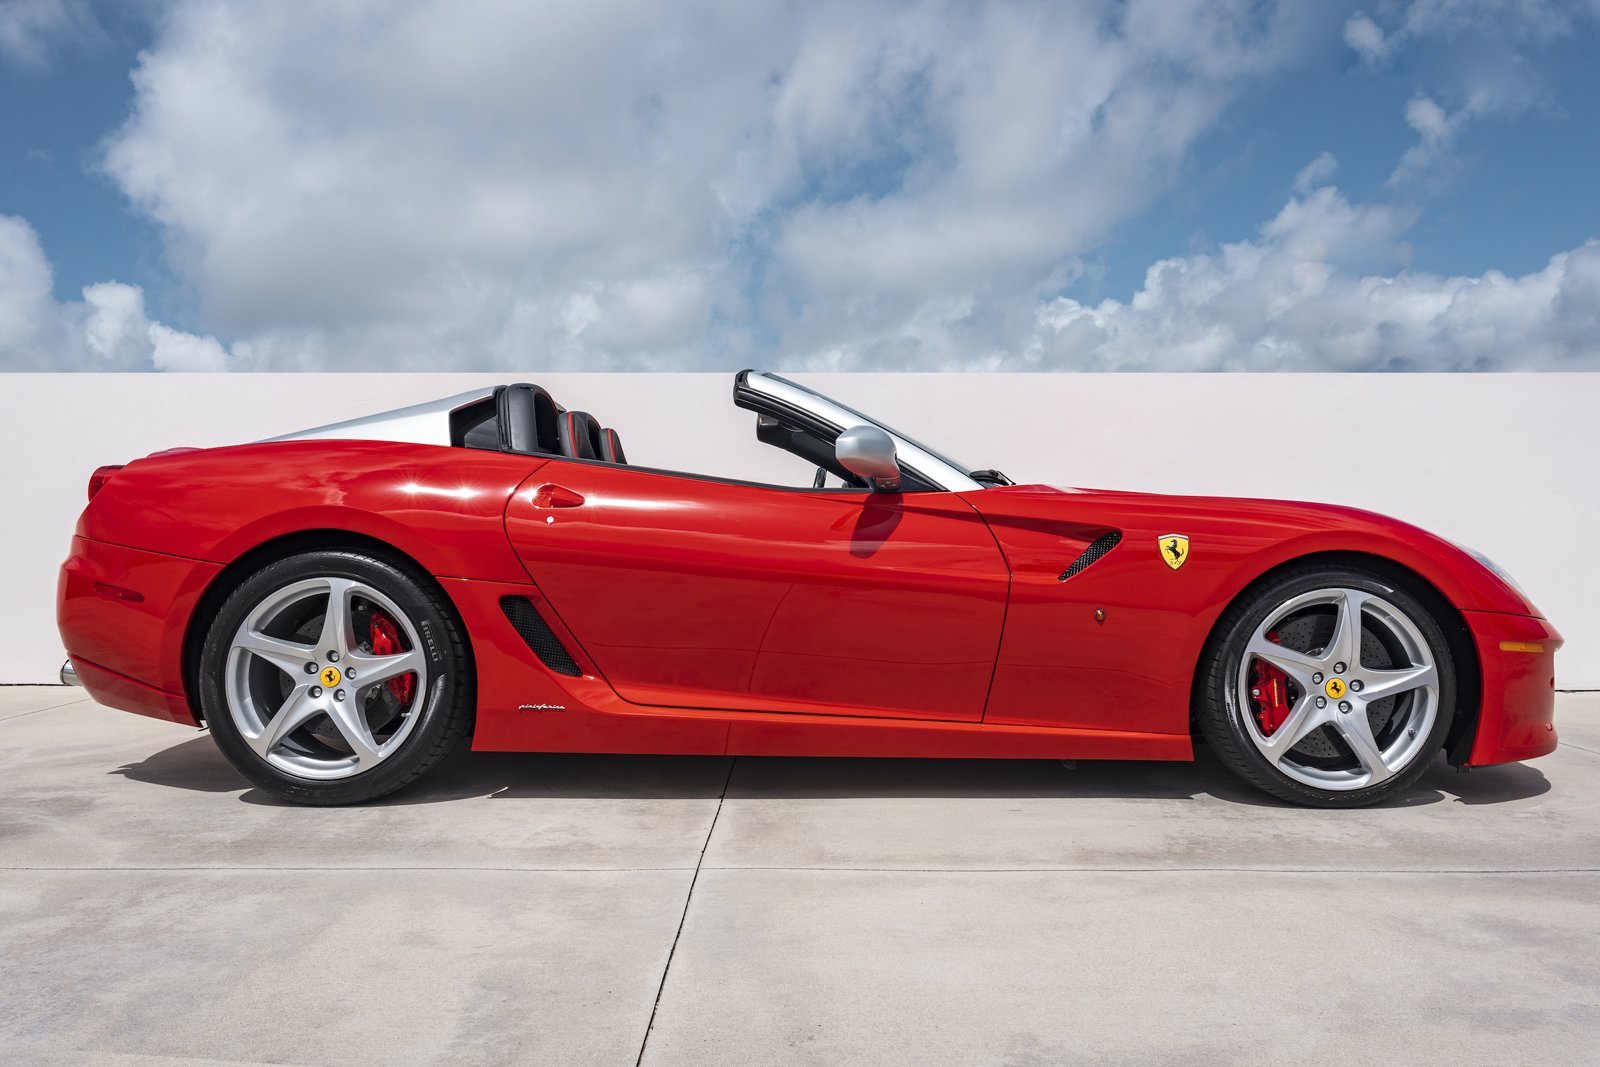 Ferrari 599 SA Aperta ตัวหายาก ถูกตั้งขายไว้เกือบ 1.4 ล้านเหรียญสหรัฐ